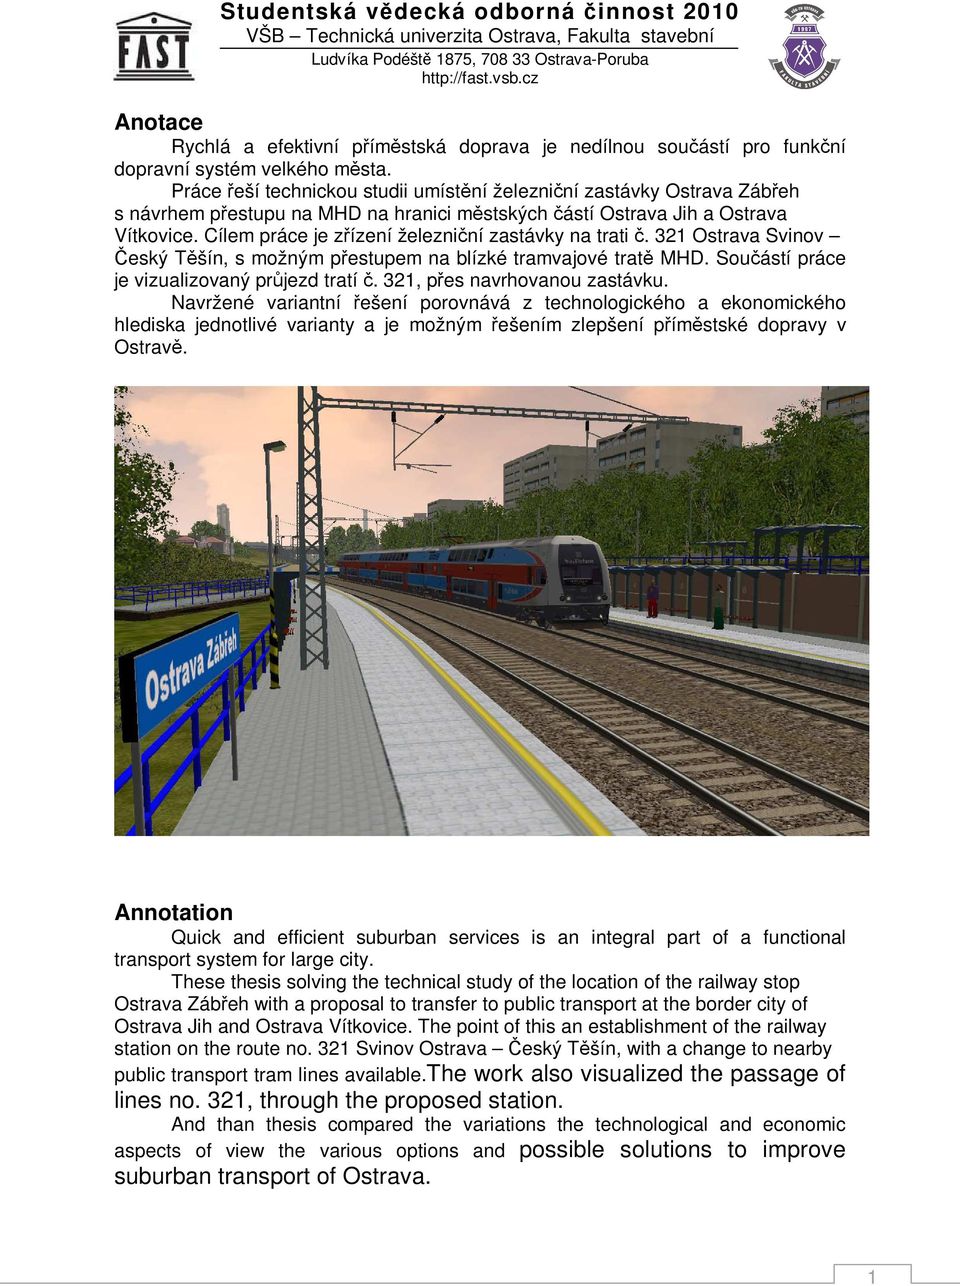 Cílem práce je zřízení železniční zastávky na trati č. 321 Ostrava Svinov Český Těšín, s možným přestupem na blízké tramvajové tratě MHD. Součástí práce je vizualizovaný průjezd tratí č.